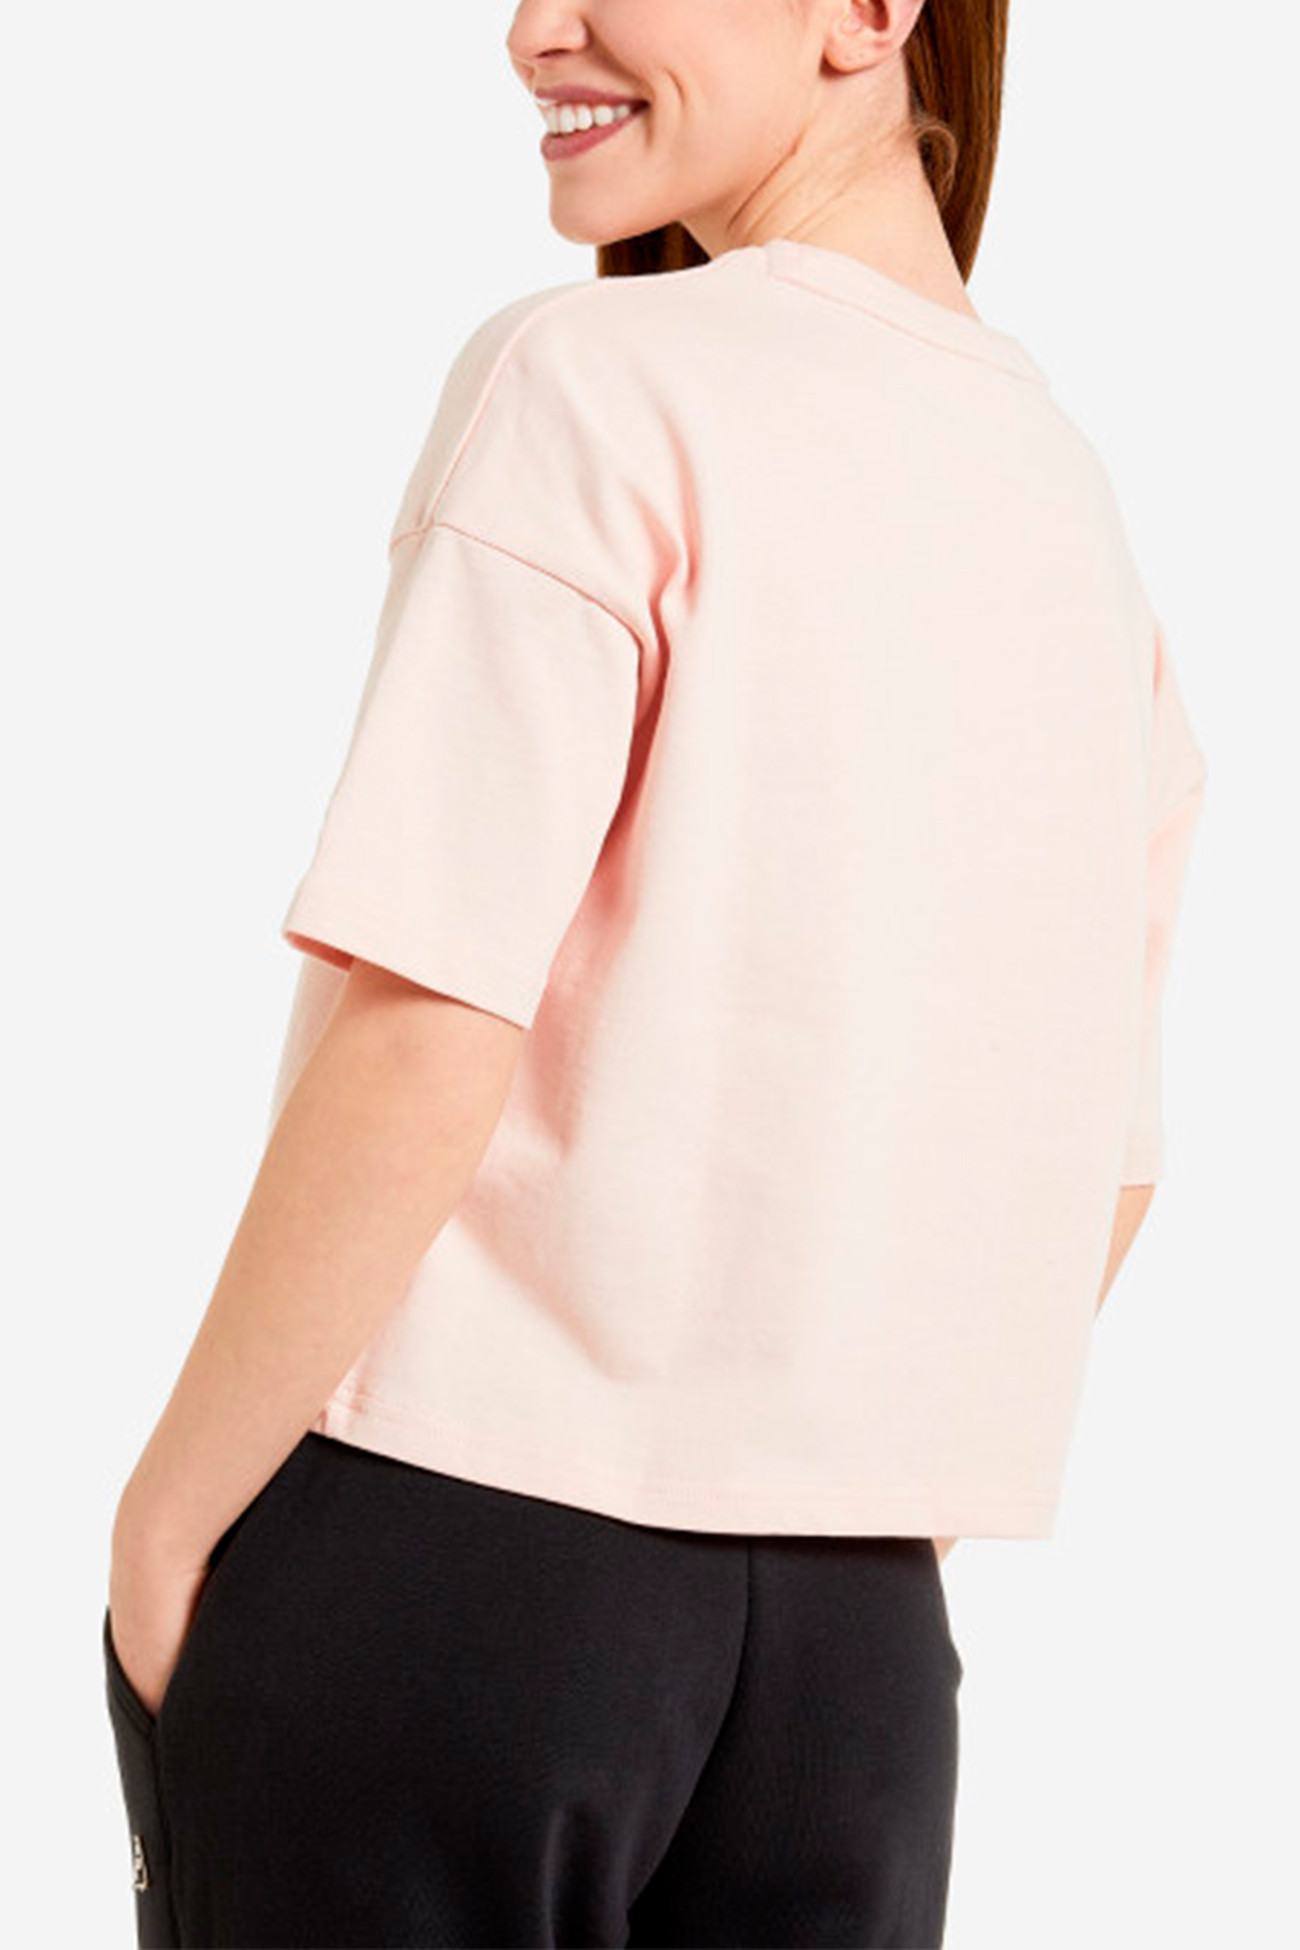 Футболка женская FILA T-shirt розовая 113423-80 изображение 3